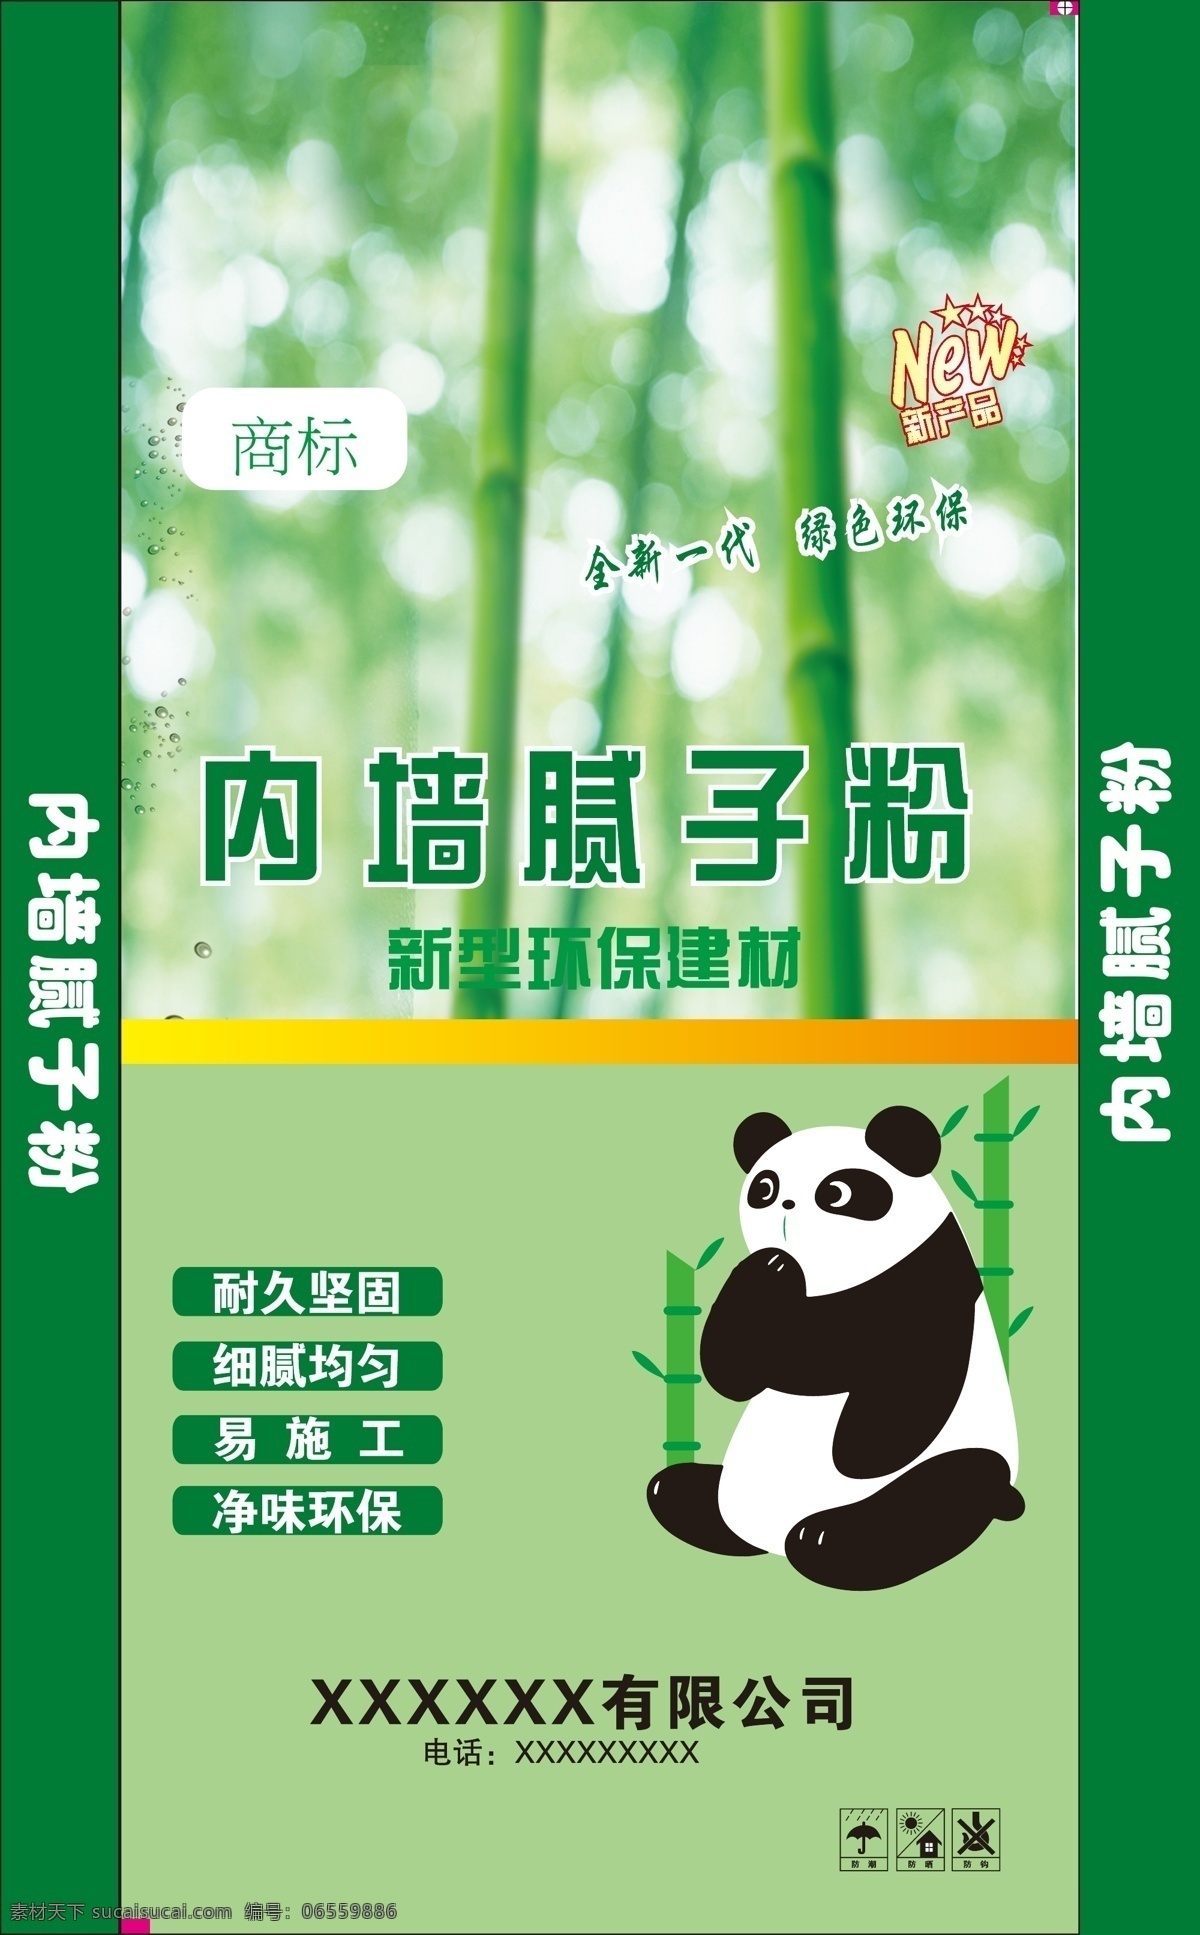 熊猫 环保 腻子粉 绿色防水腻子 袋子设计 包装设计 广告公司 宣传单 彩色印刷